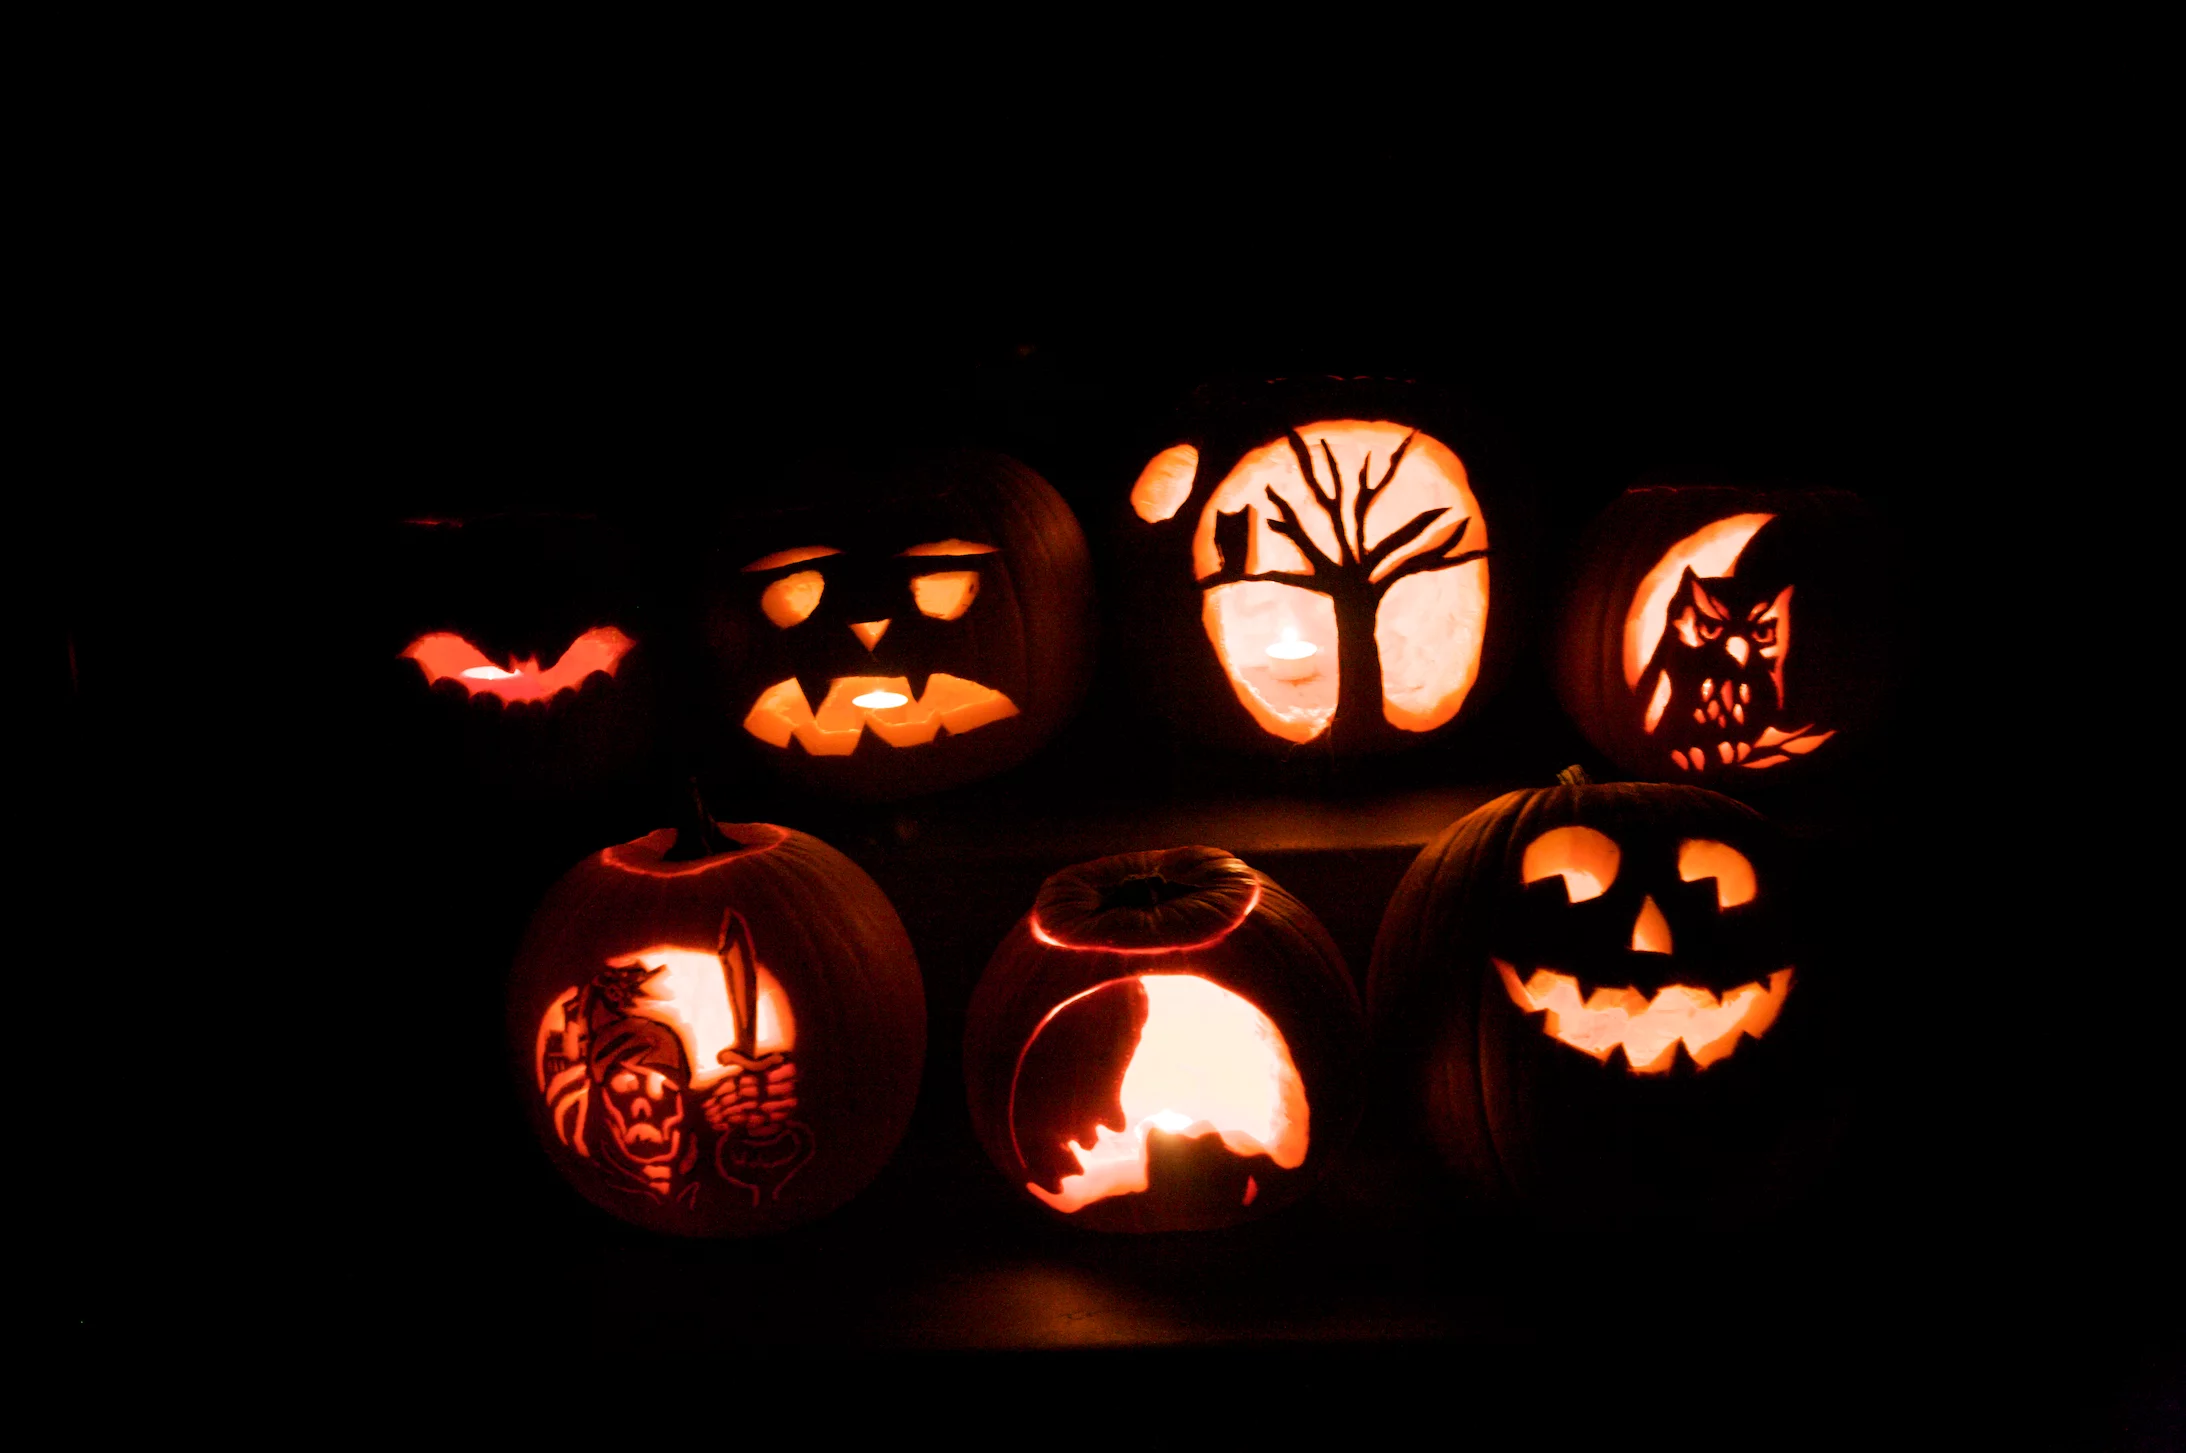 An image of pumpkins carved for Hallowe'en